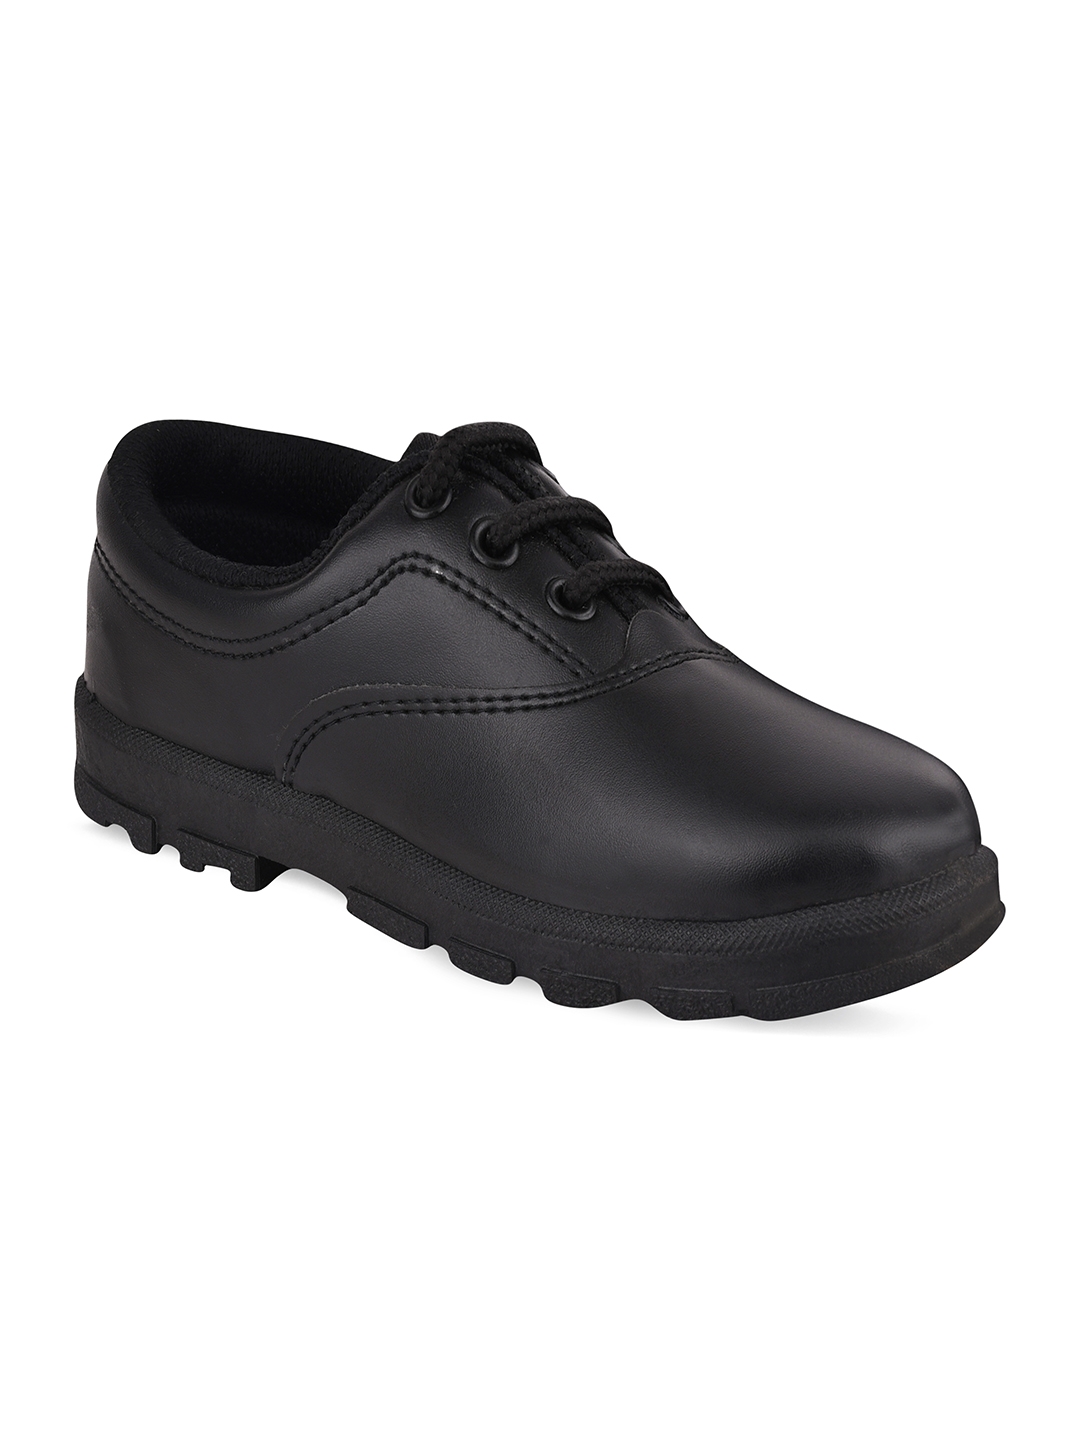 Campus Shoes | Boys Black CS A7S School Shoes 0